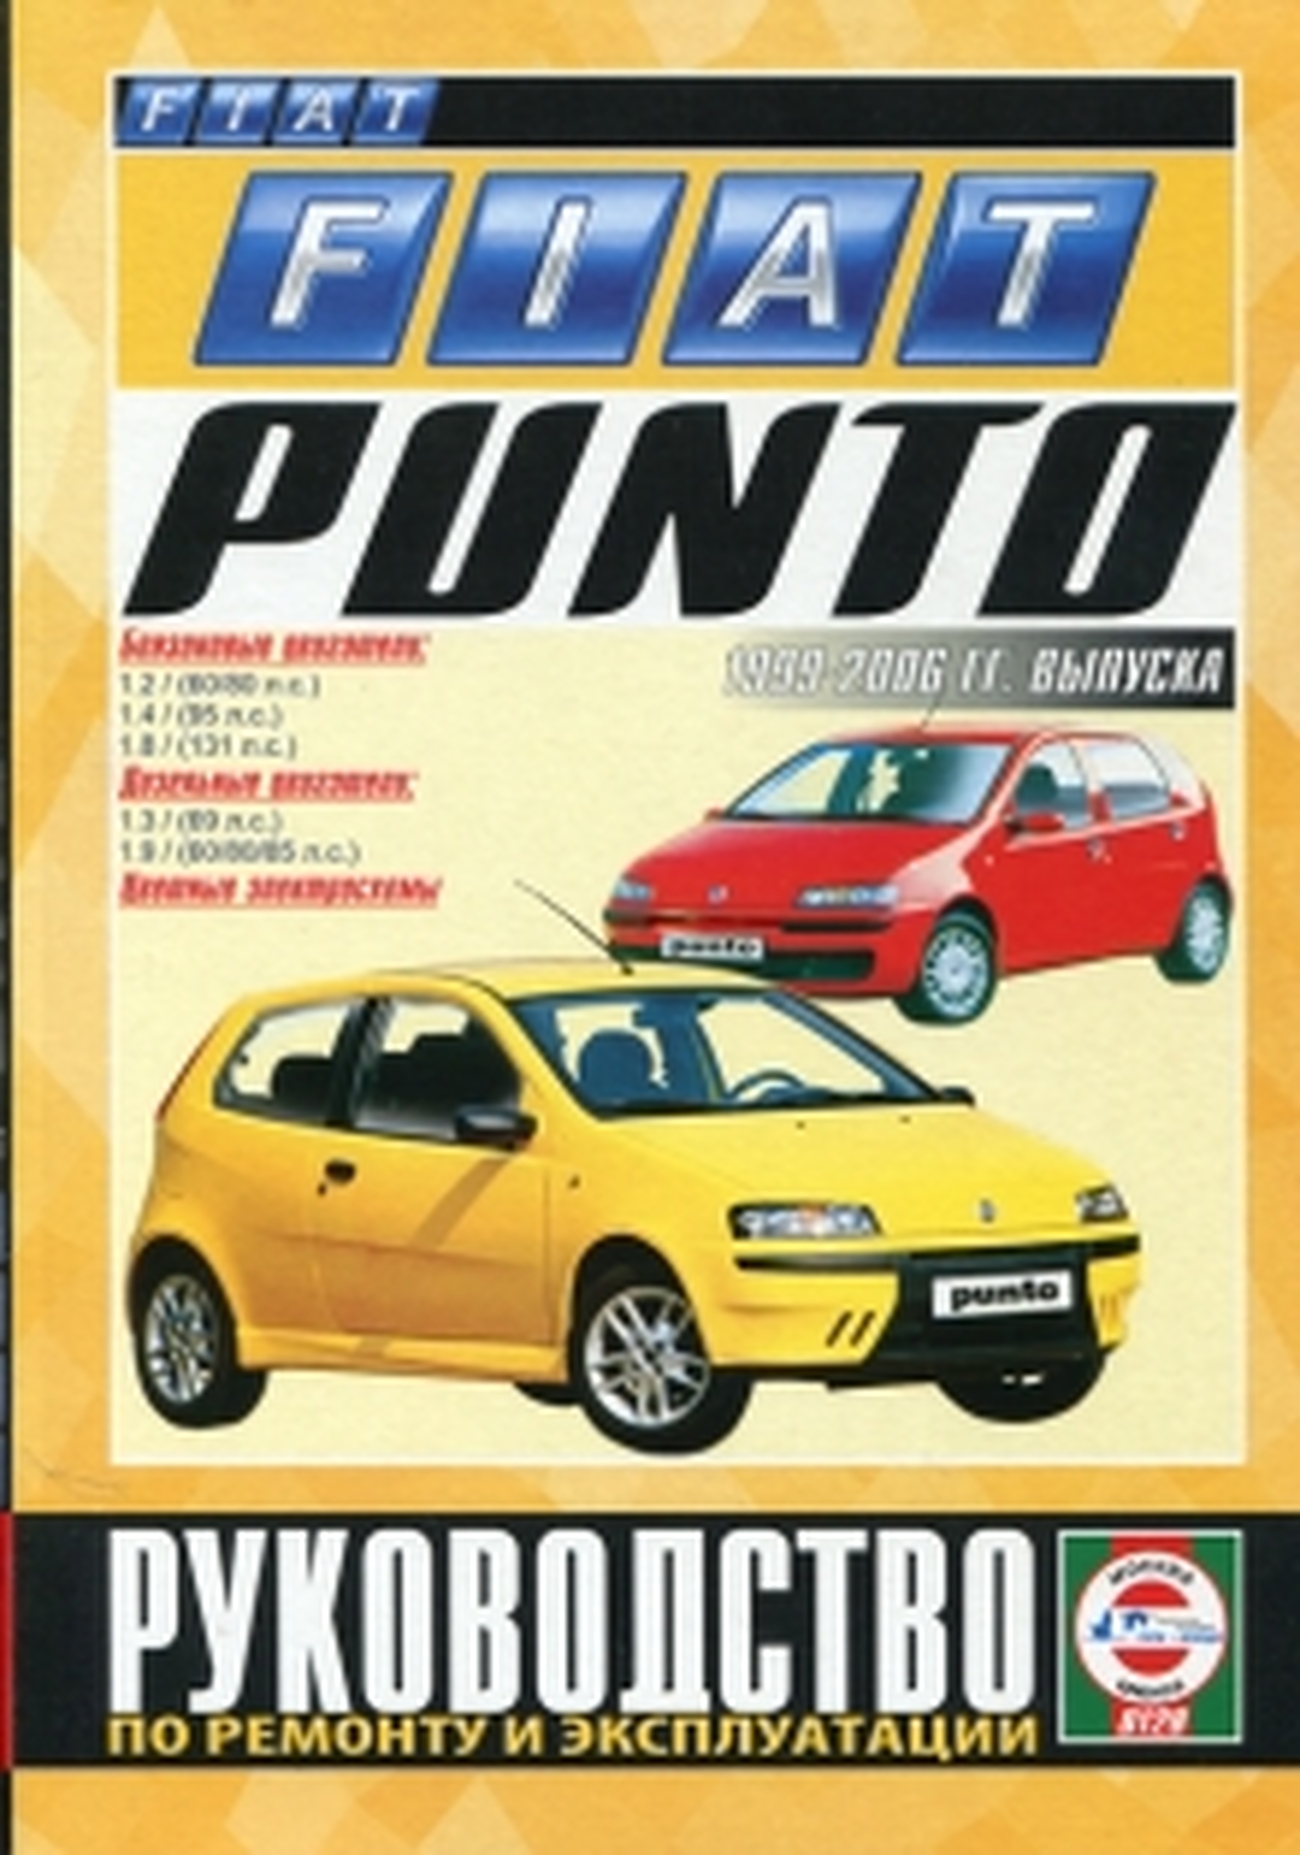 Книга: FIAT PUNTO (б , д) 1999-2006 г.в., рем., экспл., то | Чижовка